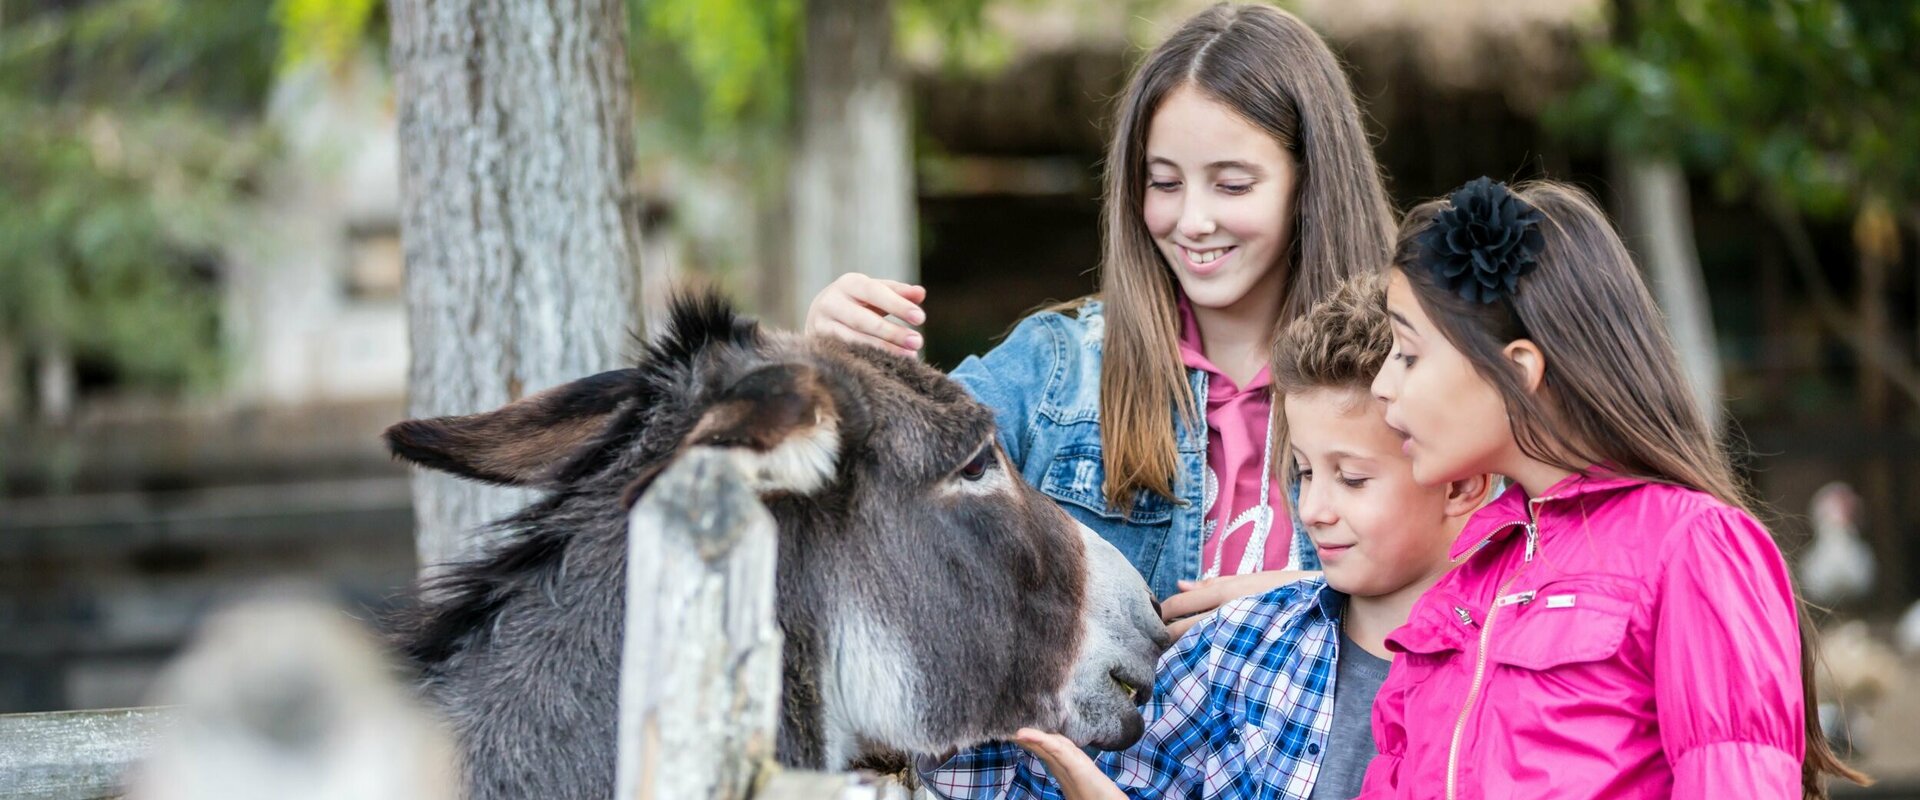 Eine Jugendliche, ein kleiner Junge und ein Mädchen stehen an einem Holzzaun und streicheln den Esel, der seinen Kopf über das Gatter streckt